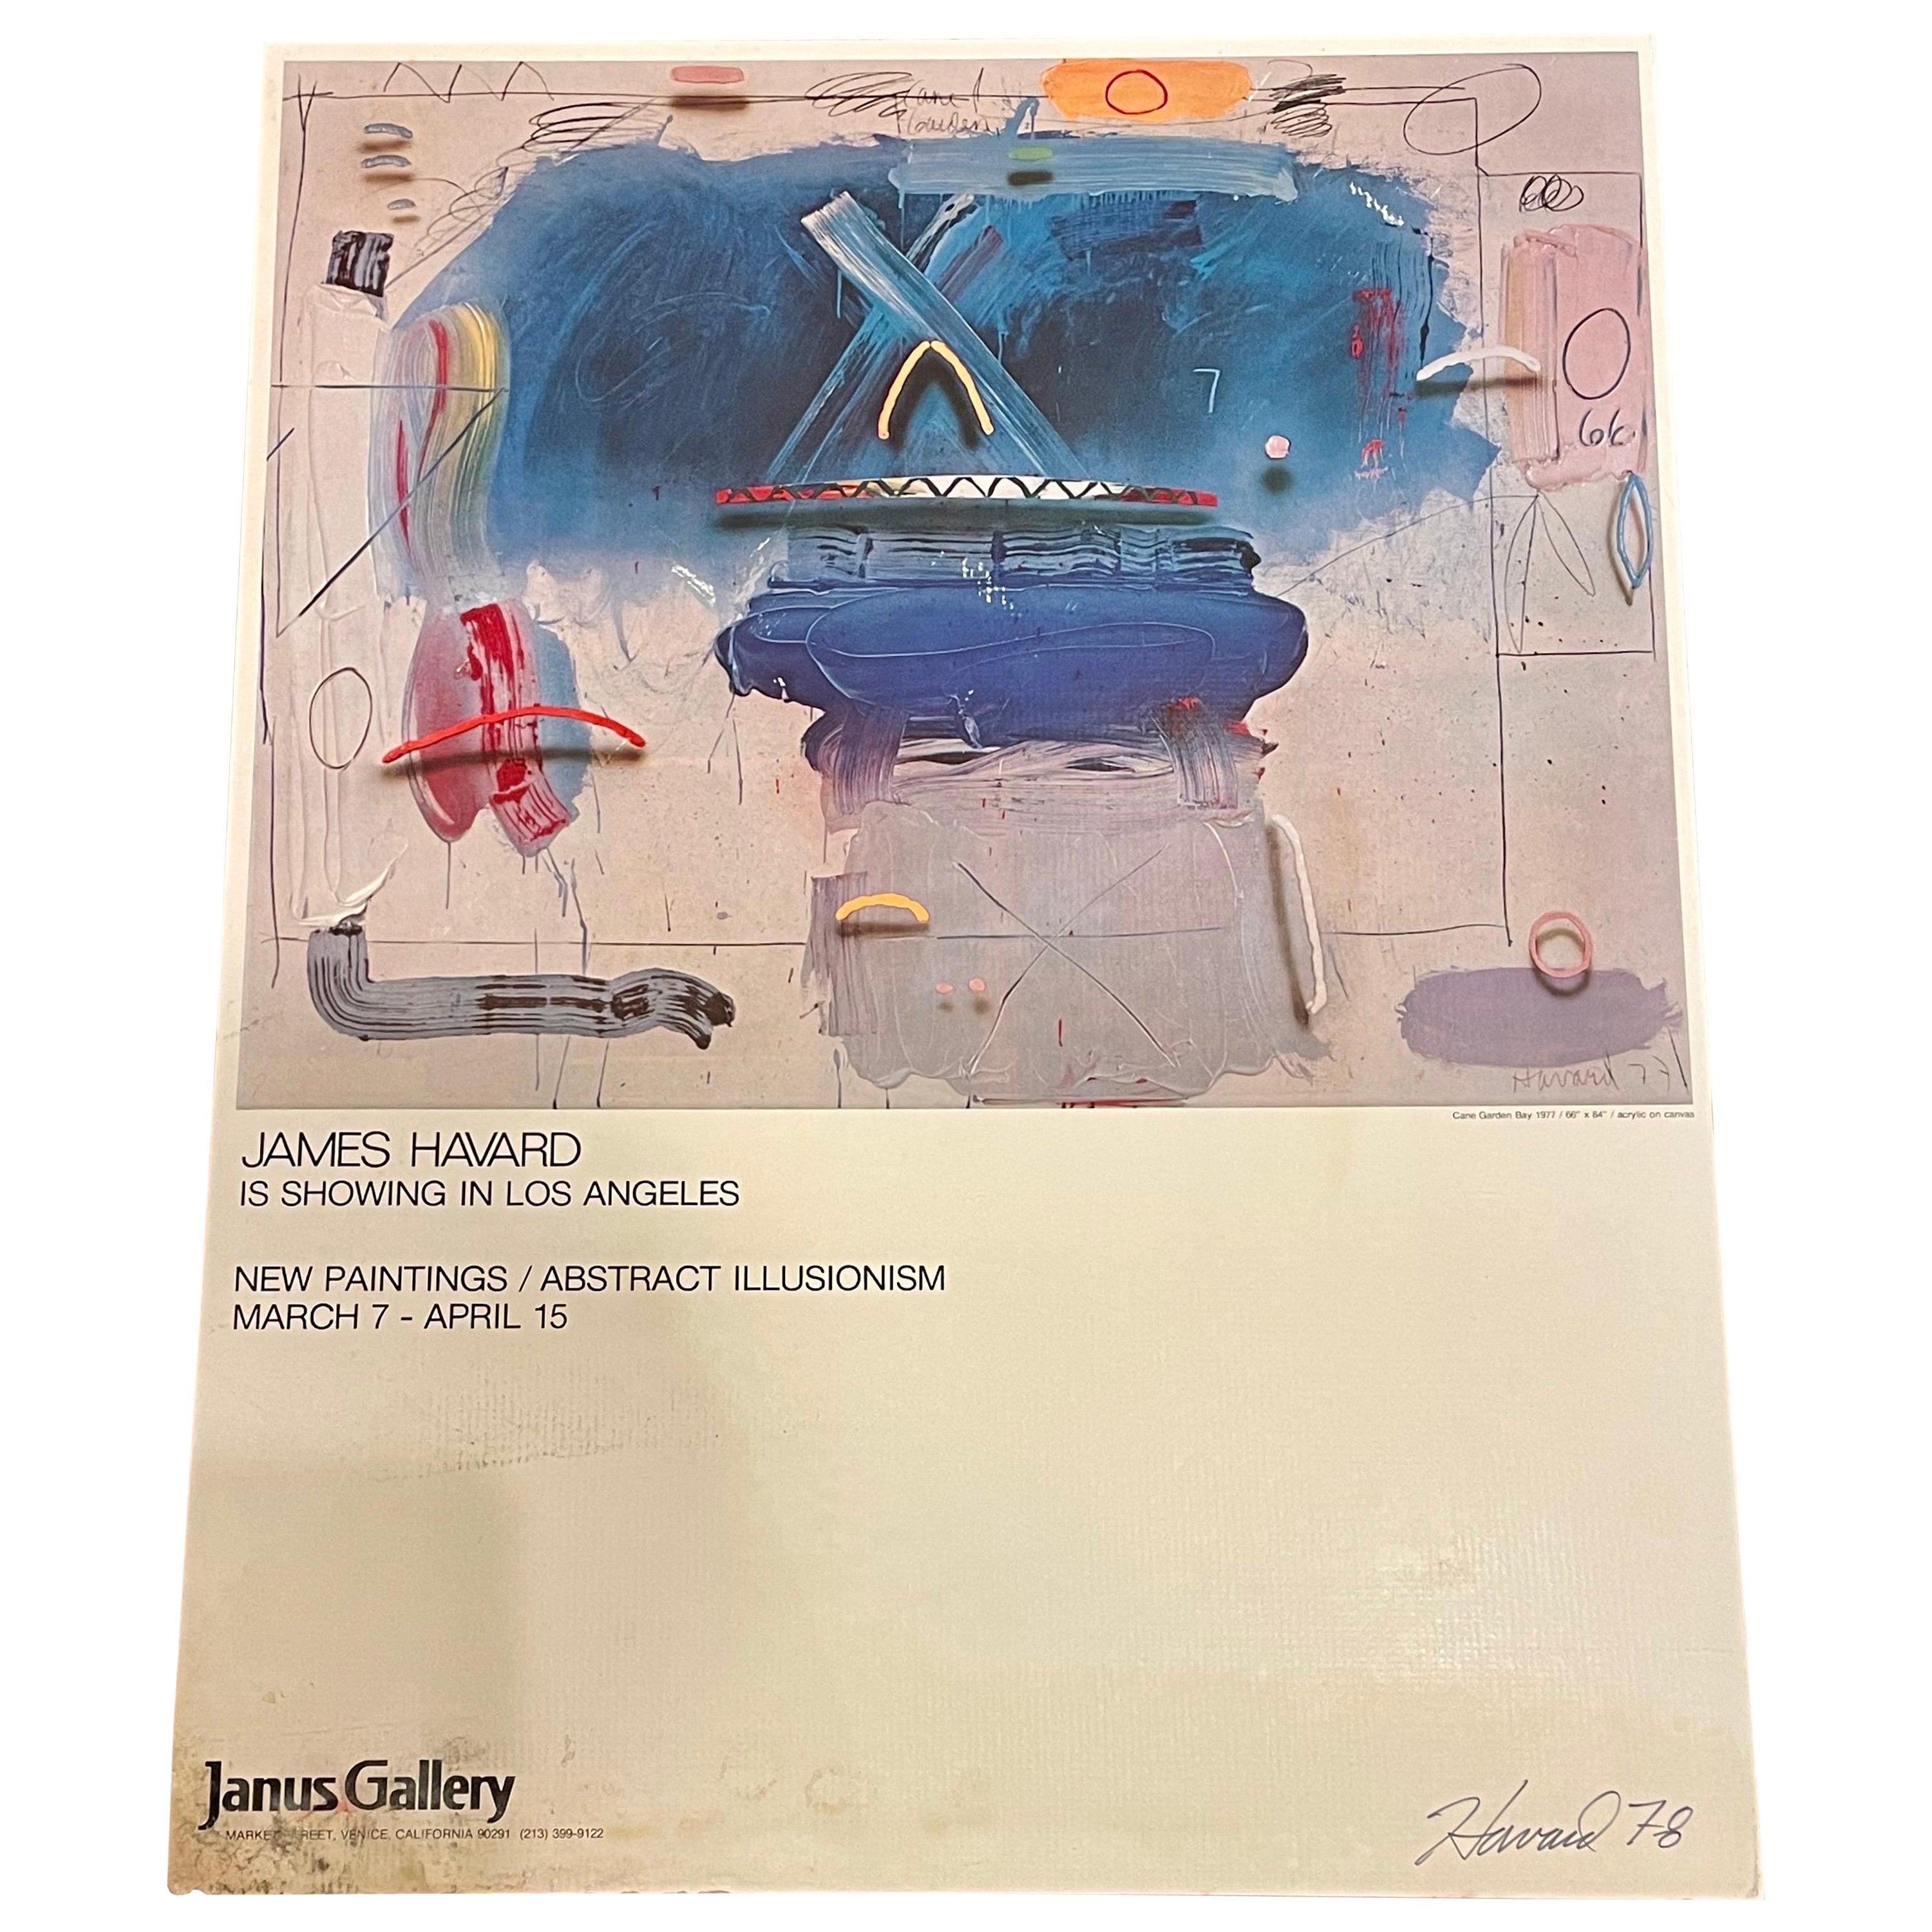 Original Ausstellung Seltenes Janus Gallery Poster Signiert und datiert von James Havard